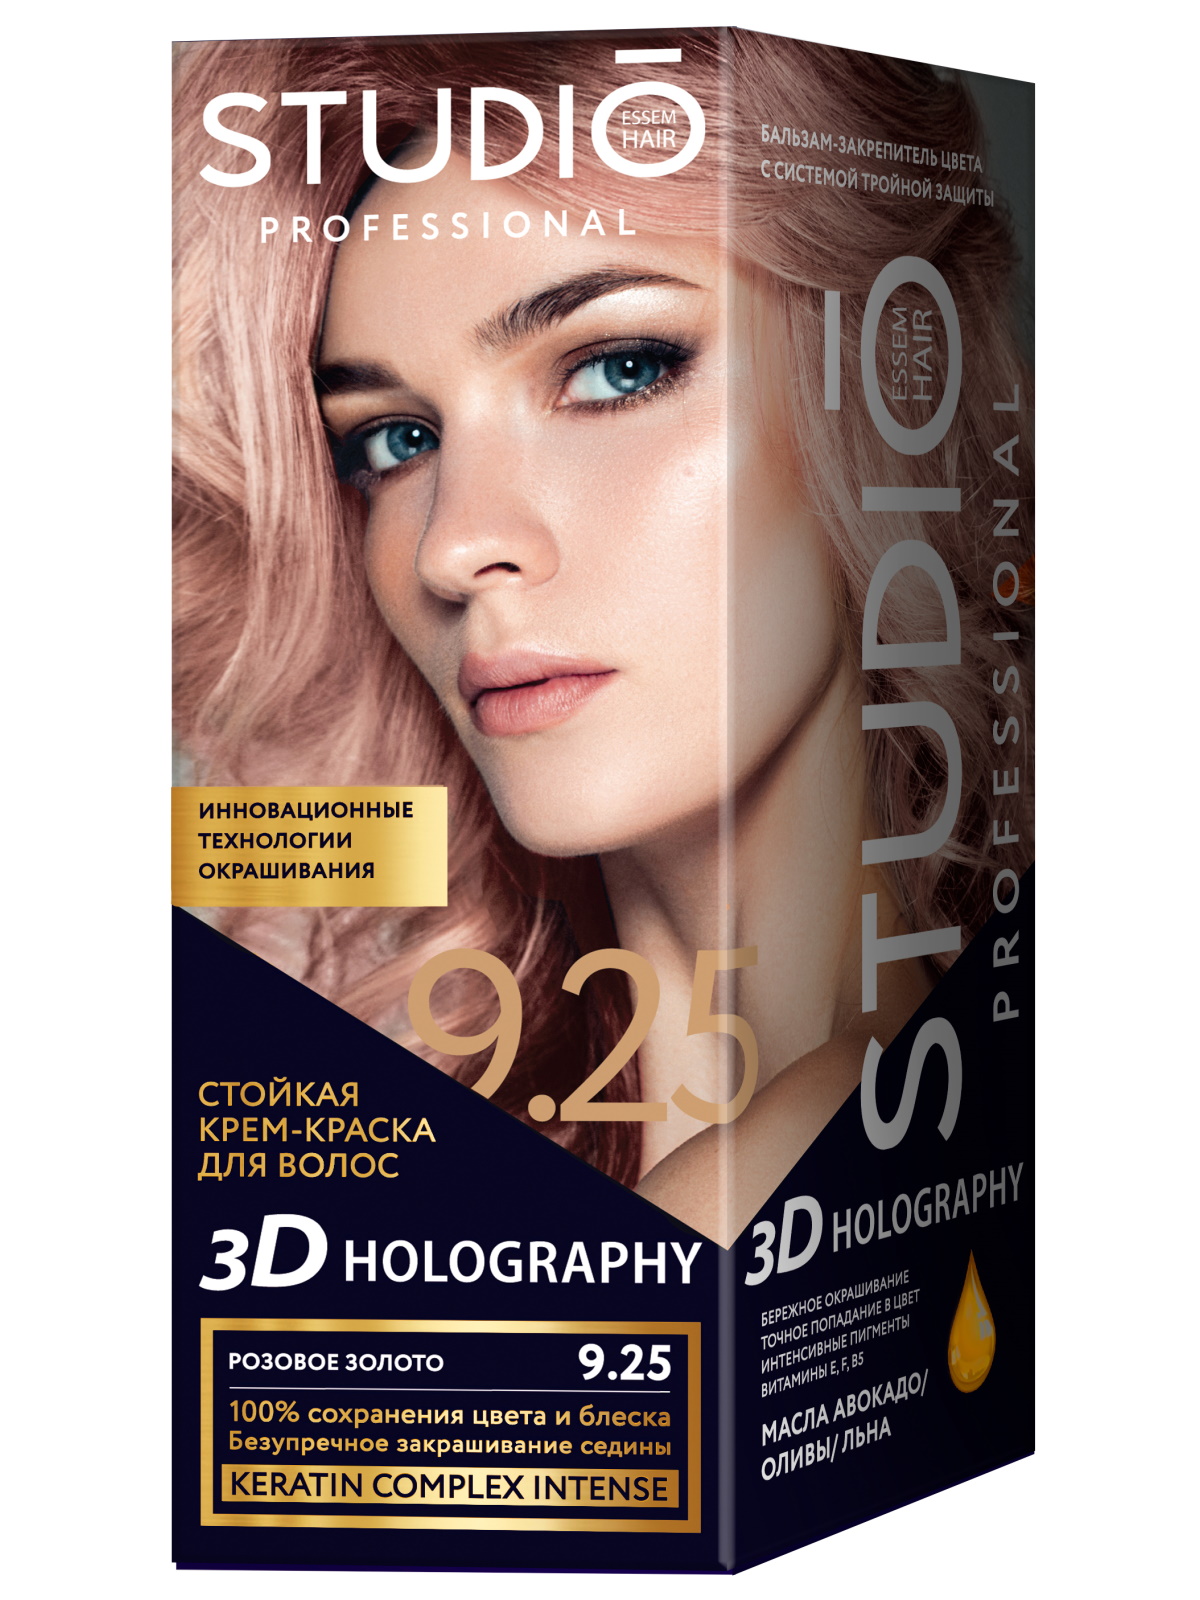 Комплект 3D HOLOGRAPHY для окрашивания STUDIO PROFESSIONAL 9.25 розовое золото 2*50+15 мл тарковский боже чувствую руку твою на затылке моем